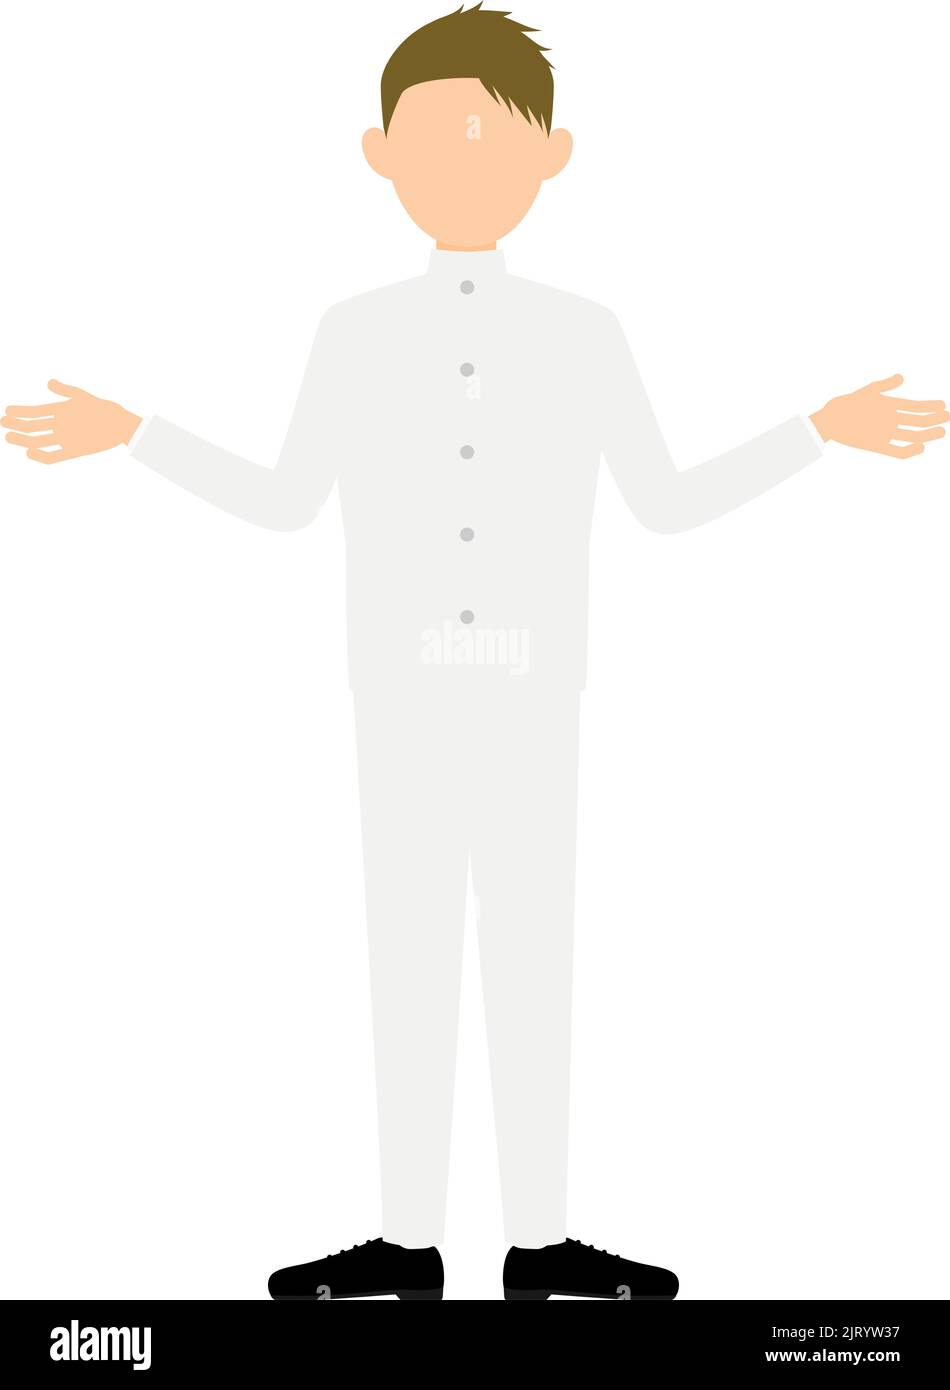 Junge in weißer Schuluniform, Gesten mit ausgestreckten Armen Stock Vektor